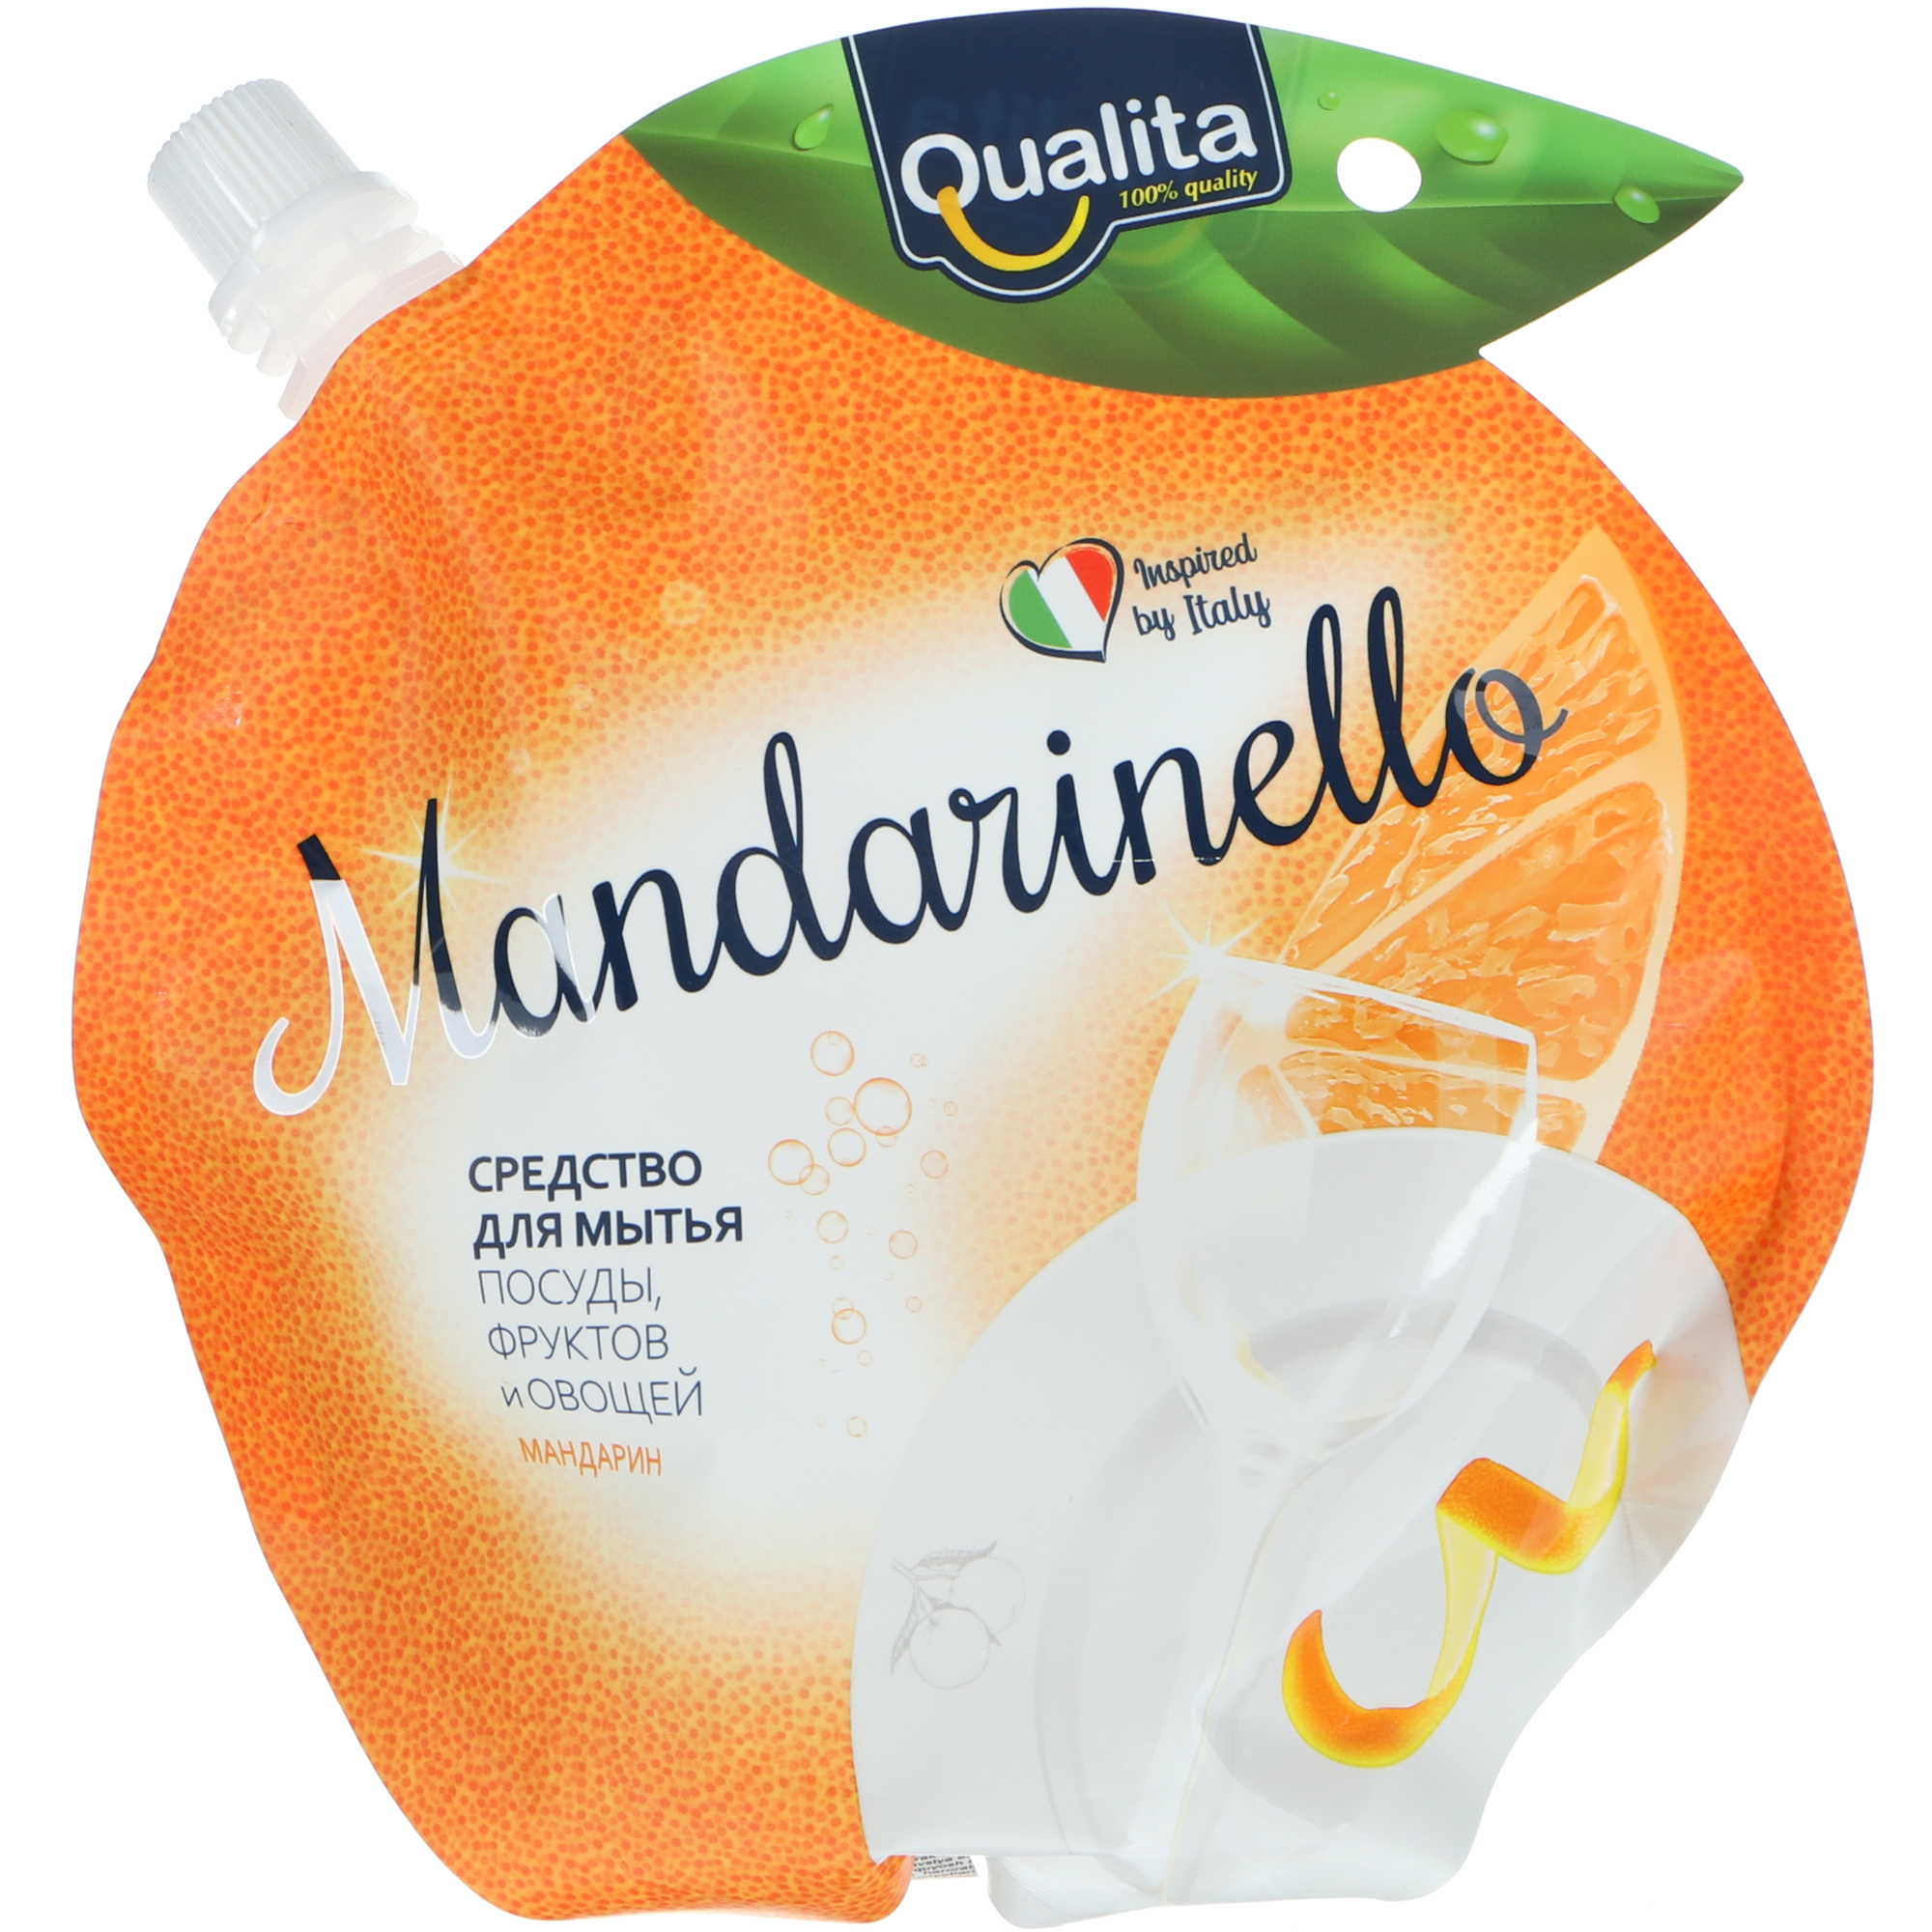 Средство для мытья посуды Qualita mandarinello 450 мл